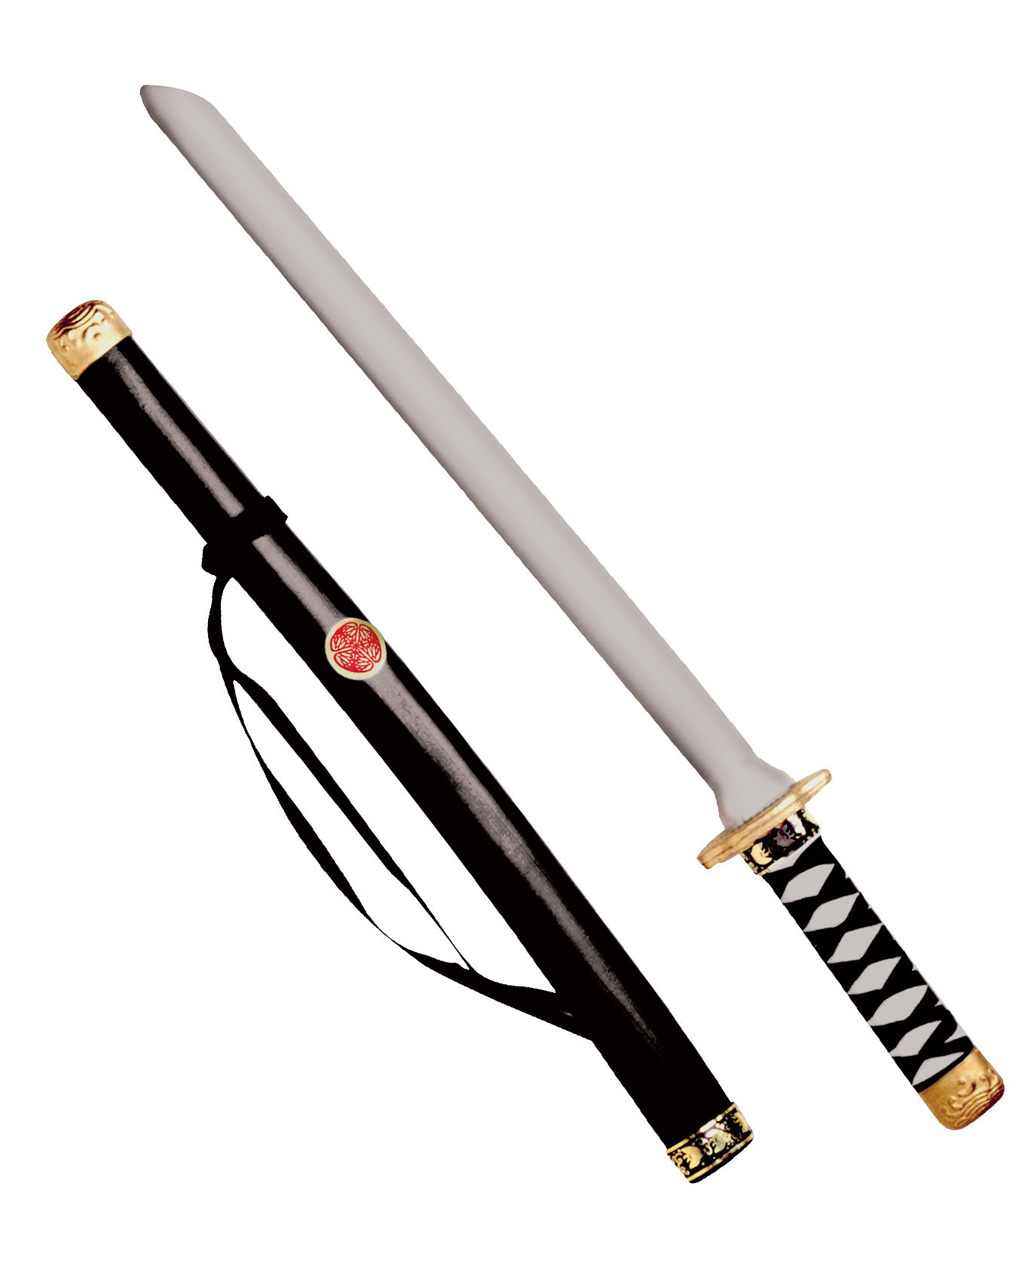 Japanisches Schwert mit Scheide 75 cm Japanschwert Spielschwert Karneval neu 